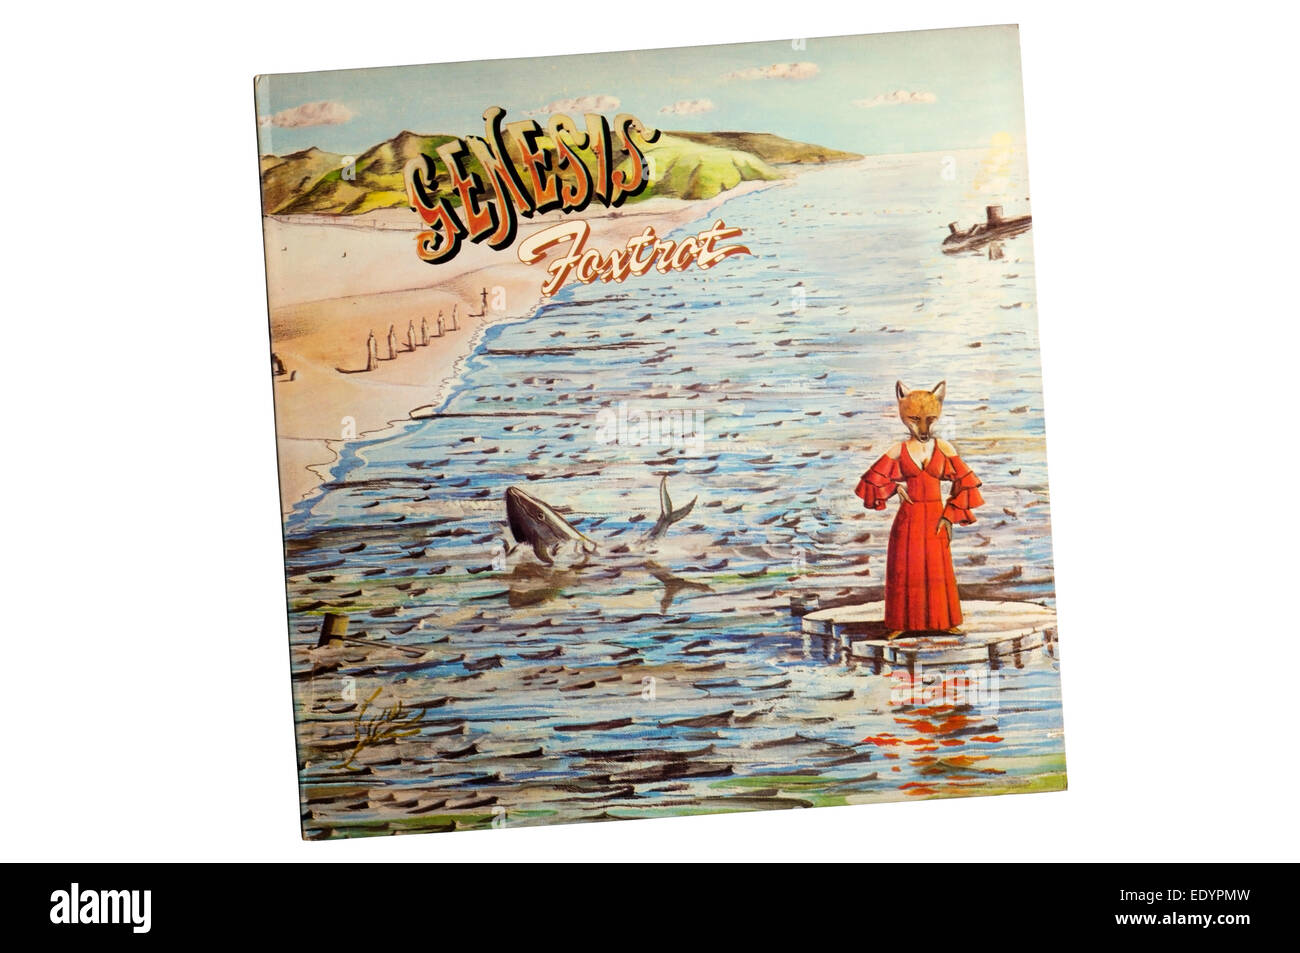 Foxtrot era il quarto album in studio dalla inglese progressive rock band Genesis, rilasciato nel 1972. Foto Stock